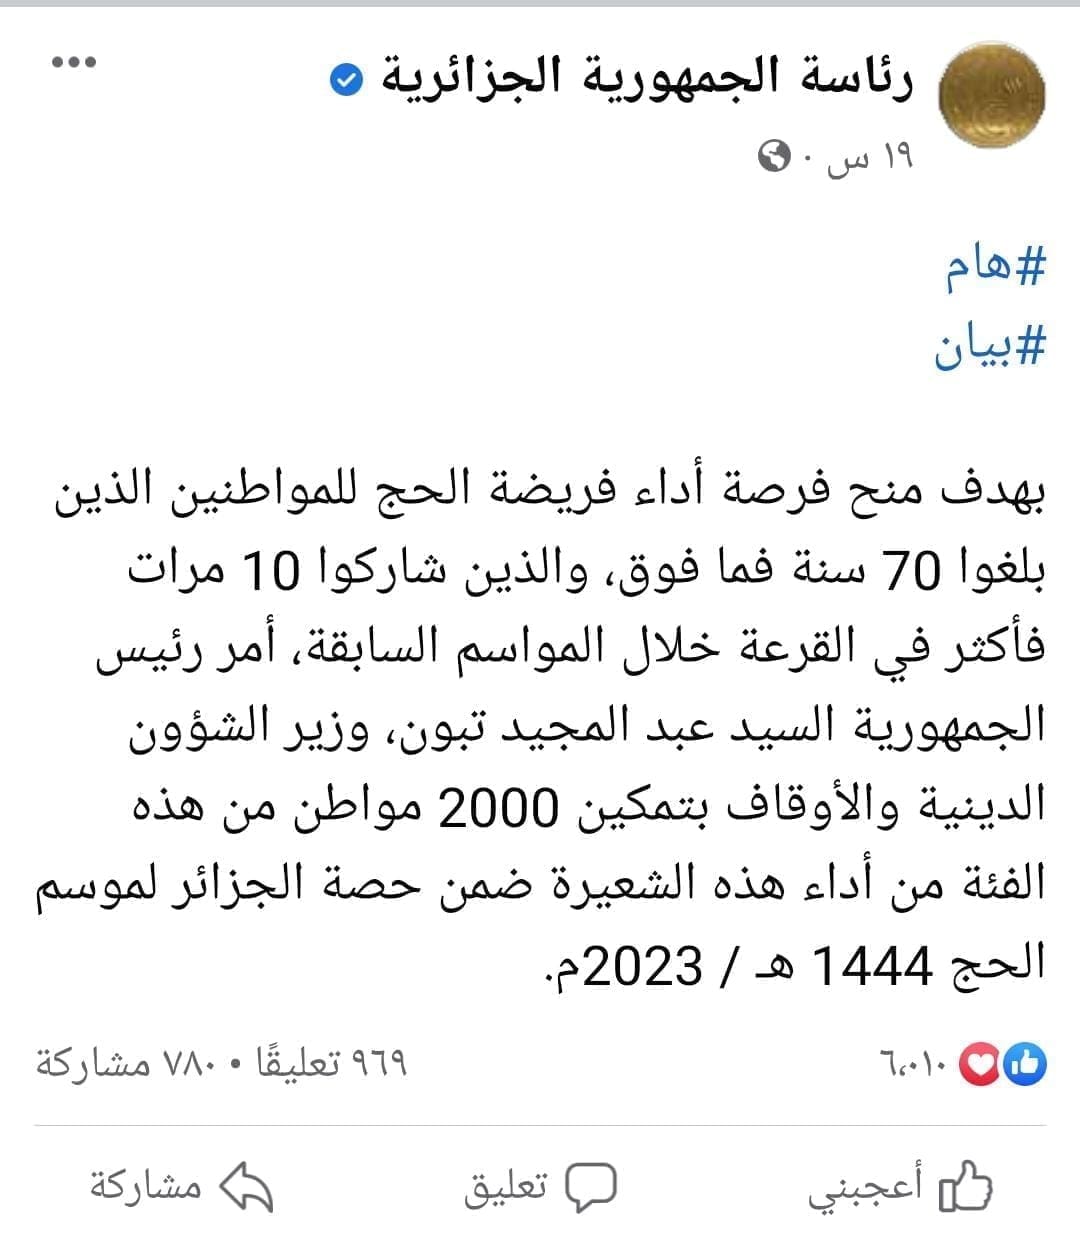 الجزائر تهدي 2000 مواطن رحلة حج لمن بلغ سن الـ70 ولم يفوز بقرعة الحج خلال الـ 10 مواسم سابقة